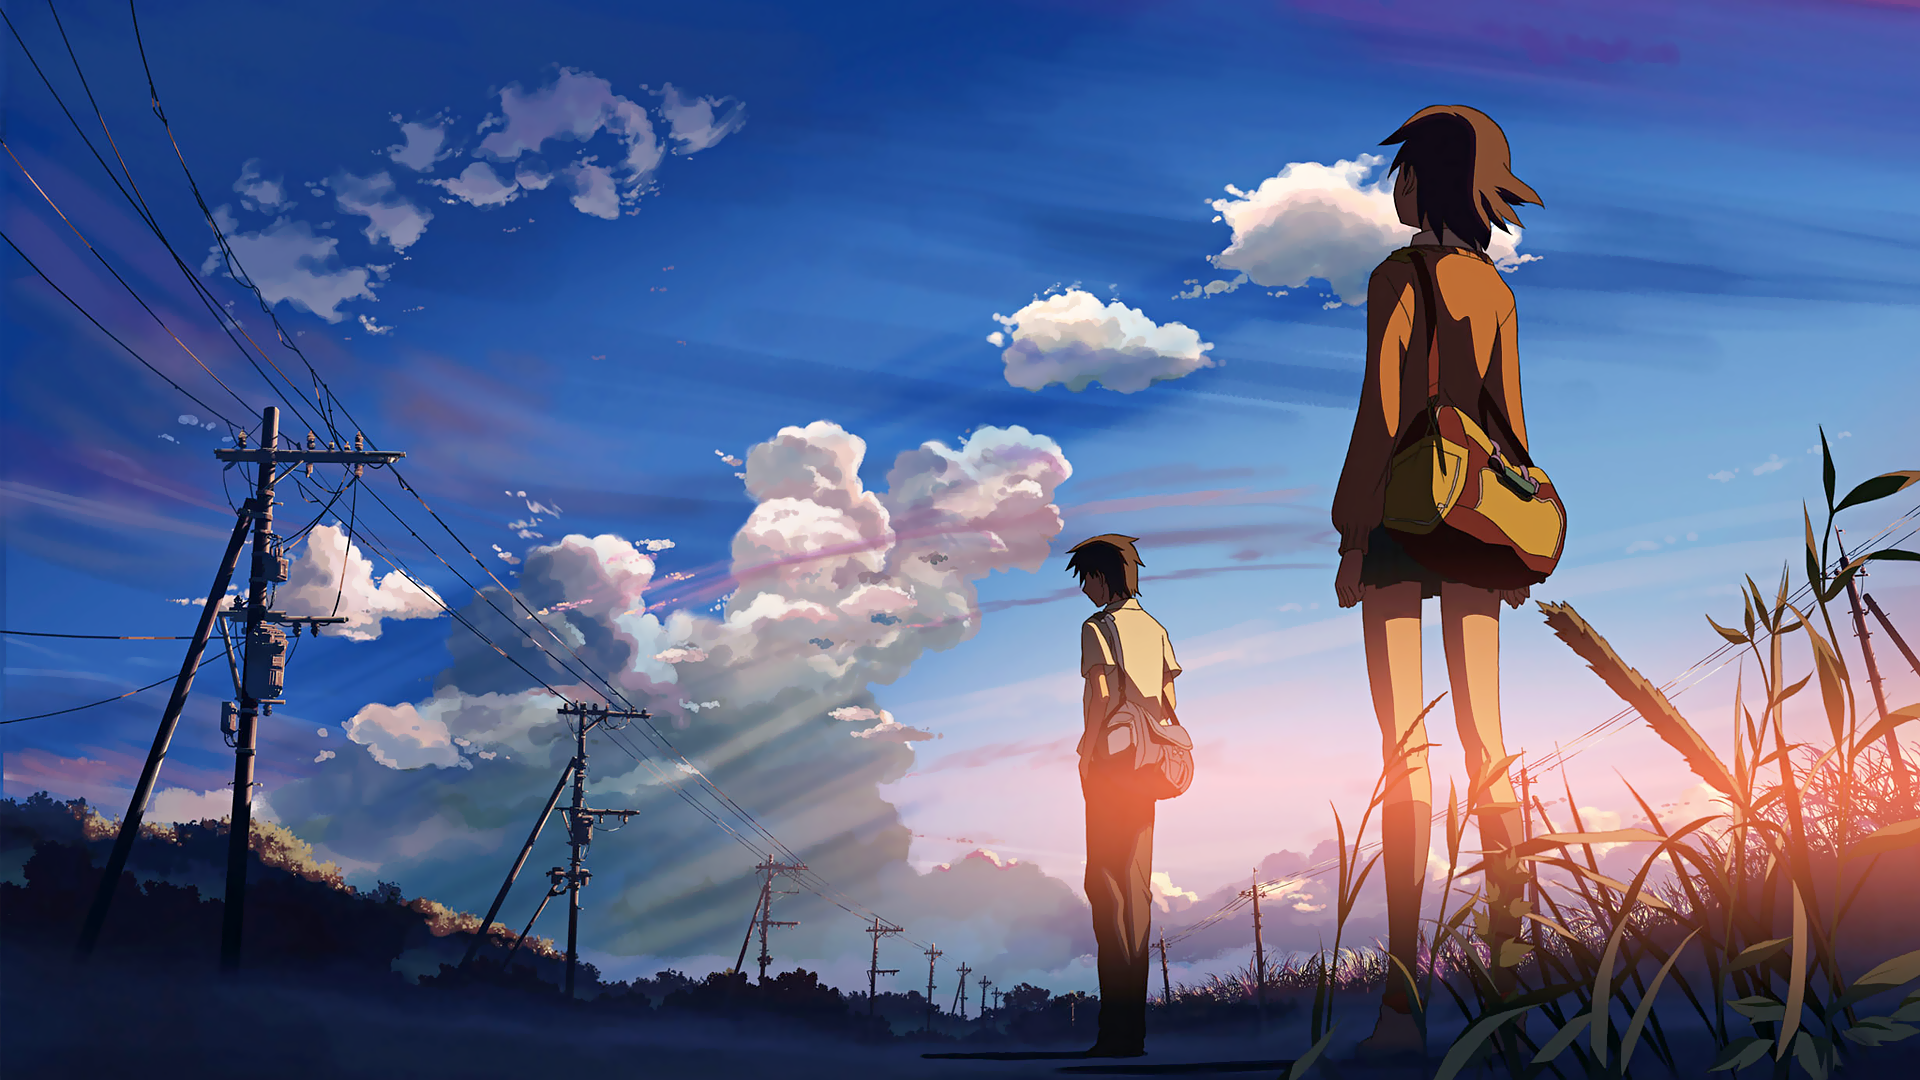 Anime Wallpaper Enhanced (Update 2). Anime scenery wallpaper, Anime scenery, Aesthetic anime